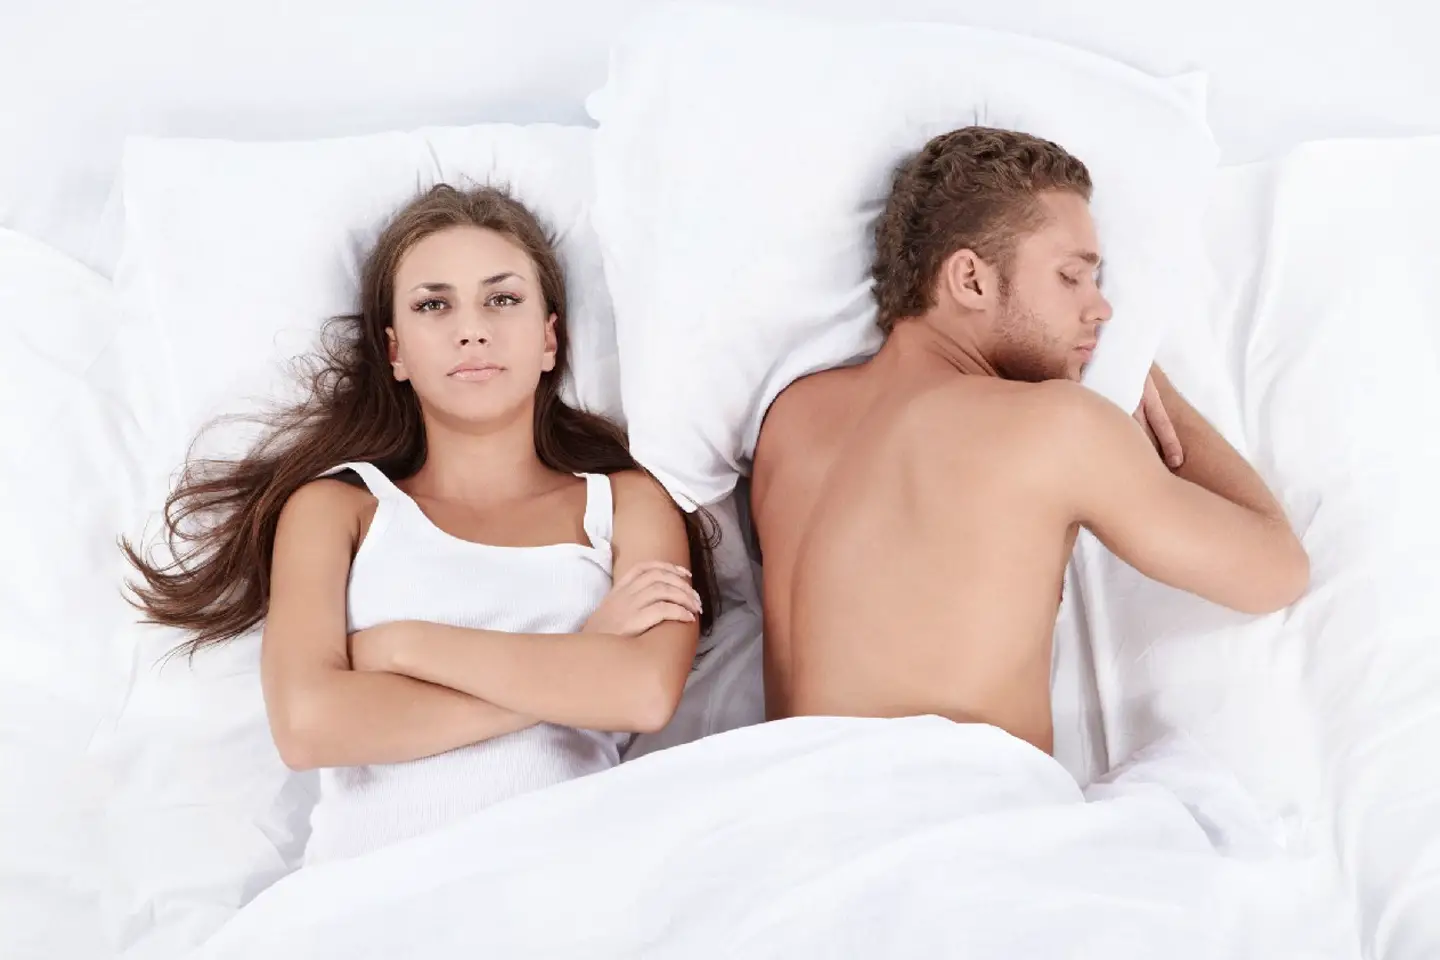 Como saber si mi pareja me engaña sexualmente?